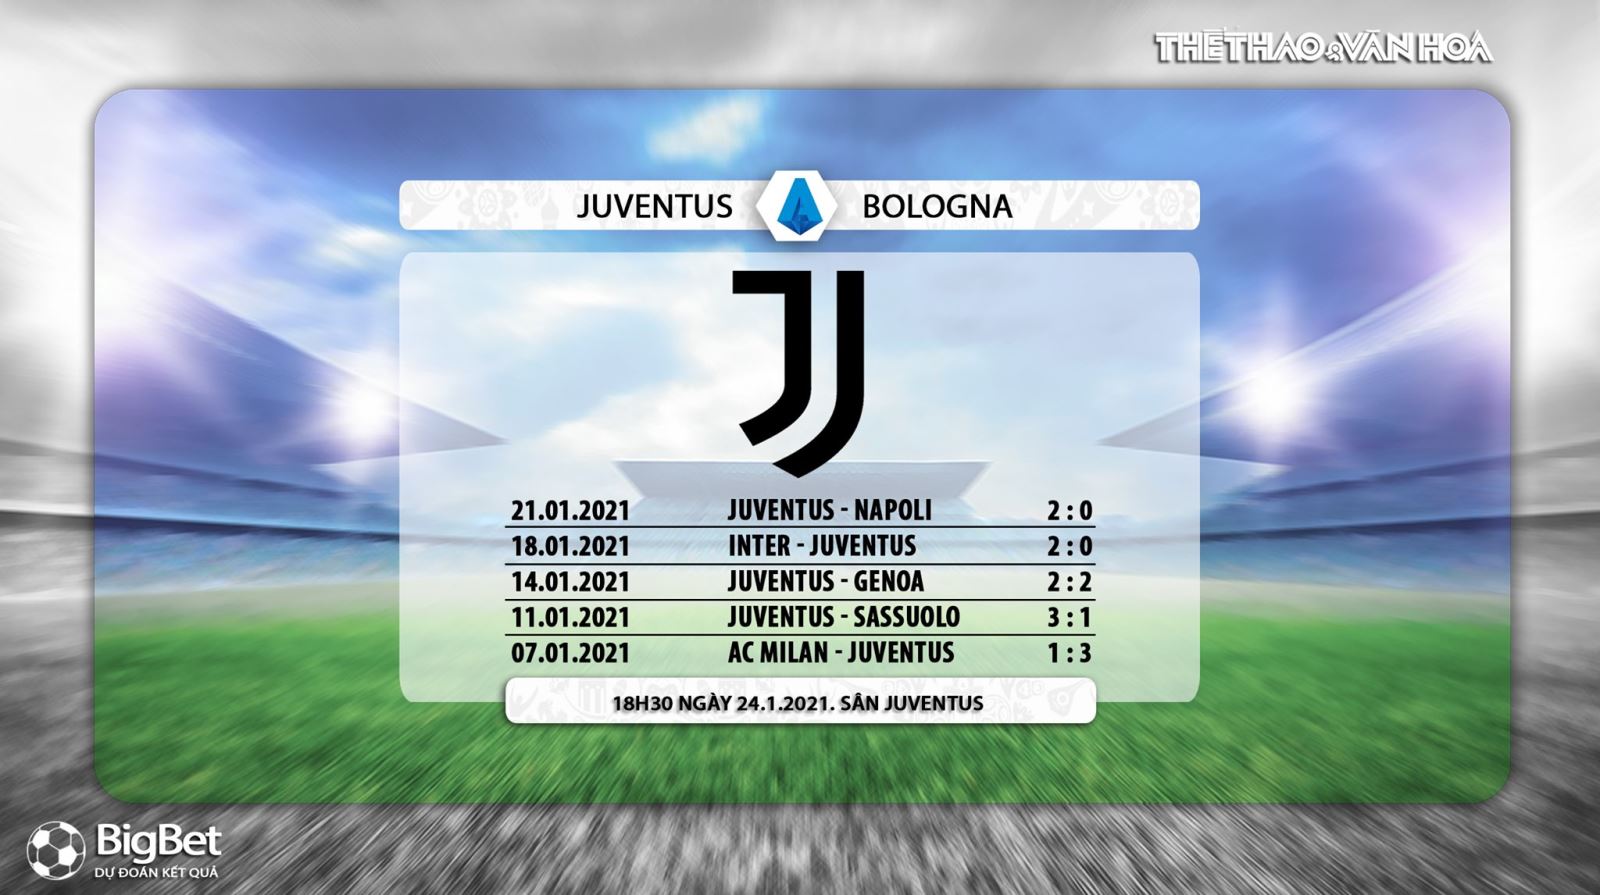 Keo nha cai, Nhận định kết quả, Juventus vs Bologna, Trực tiếp bóng đá Italia hôm nay, FPT Play, nhận định bóng đá bóng đá Juventus vs Bologna, trực tiếp bóng đá Serie A, kèo bóng đá